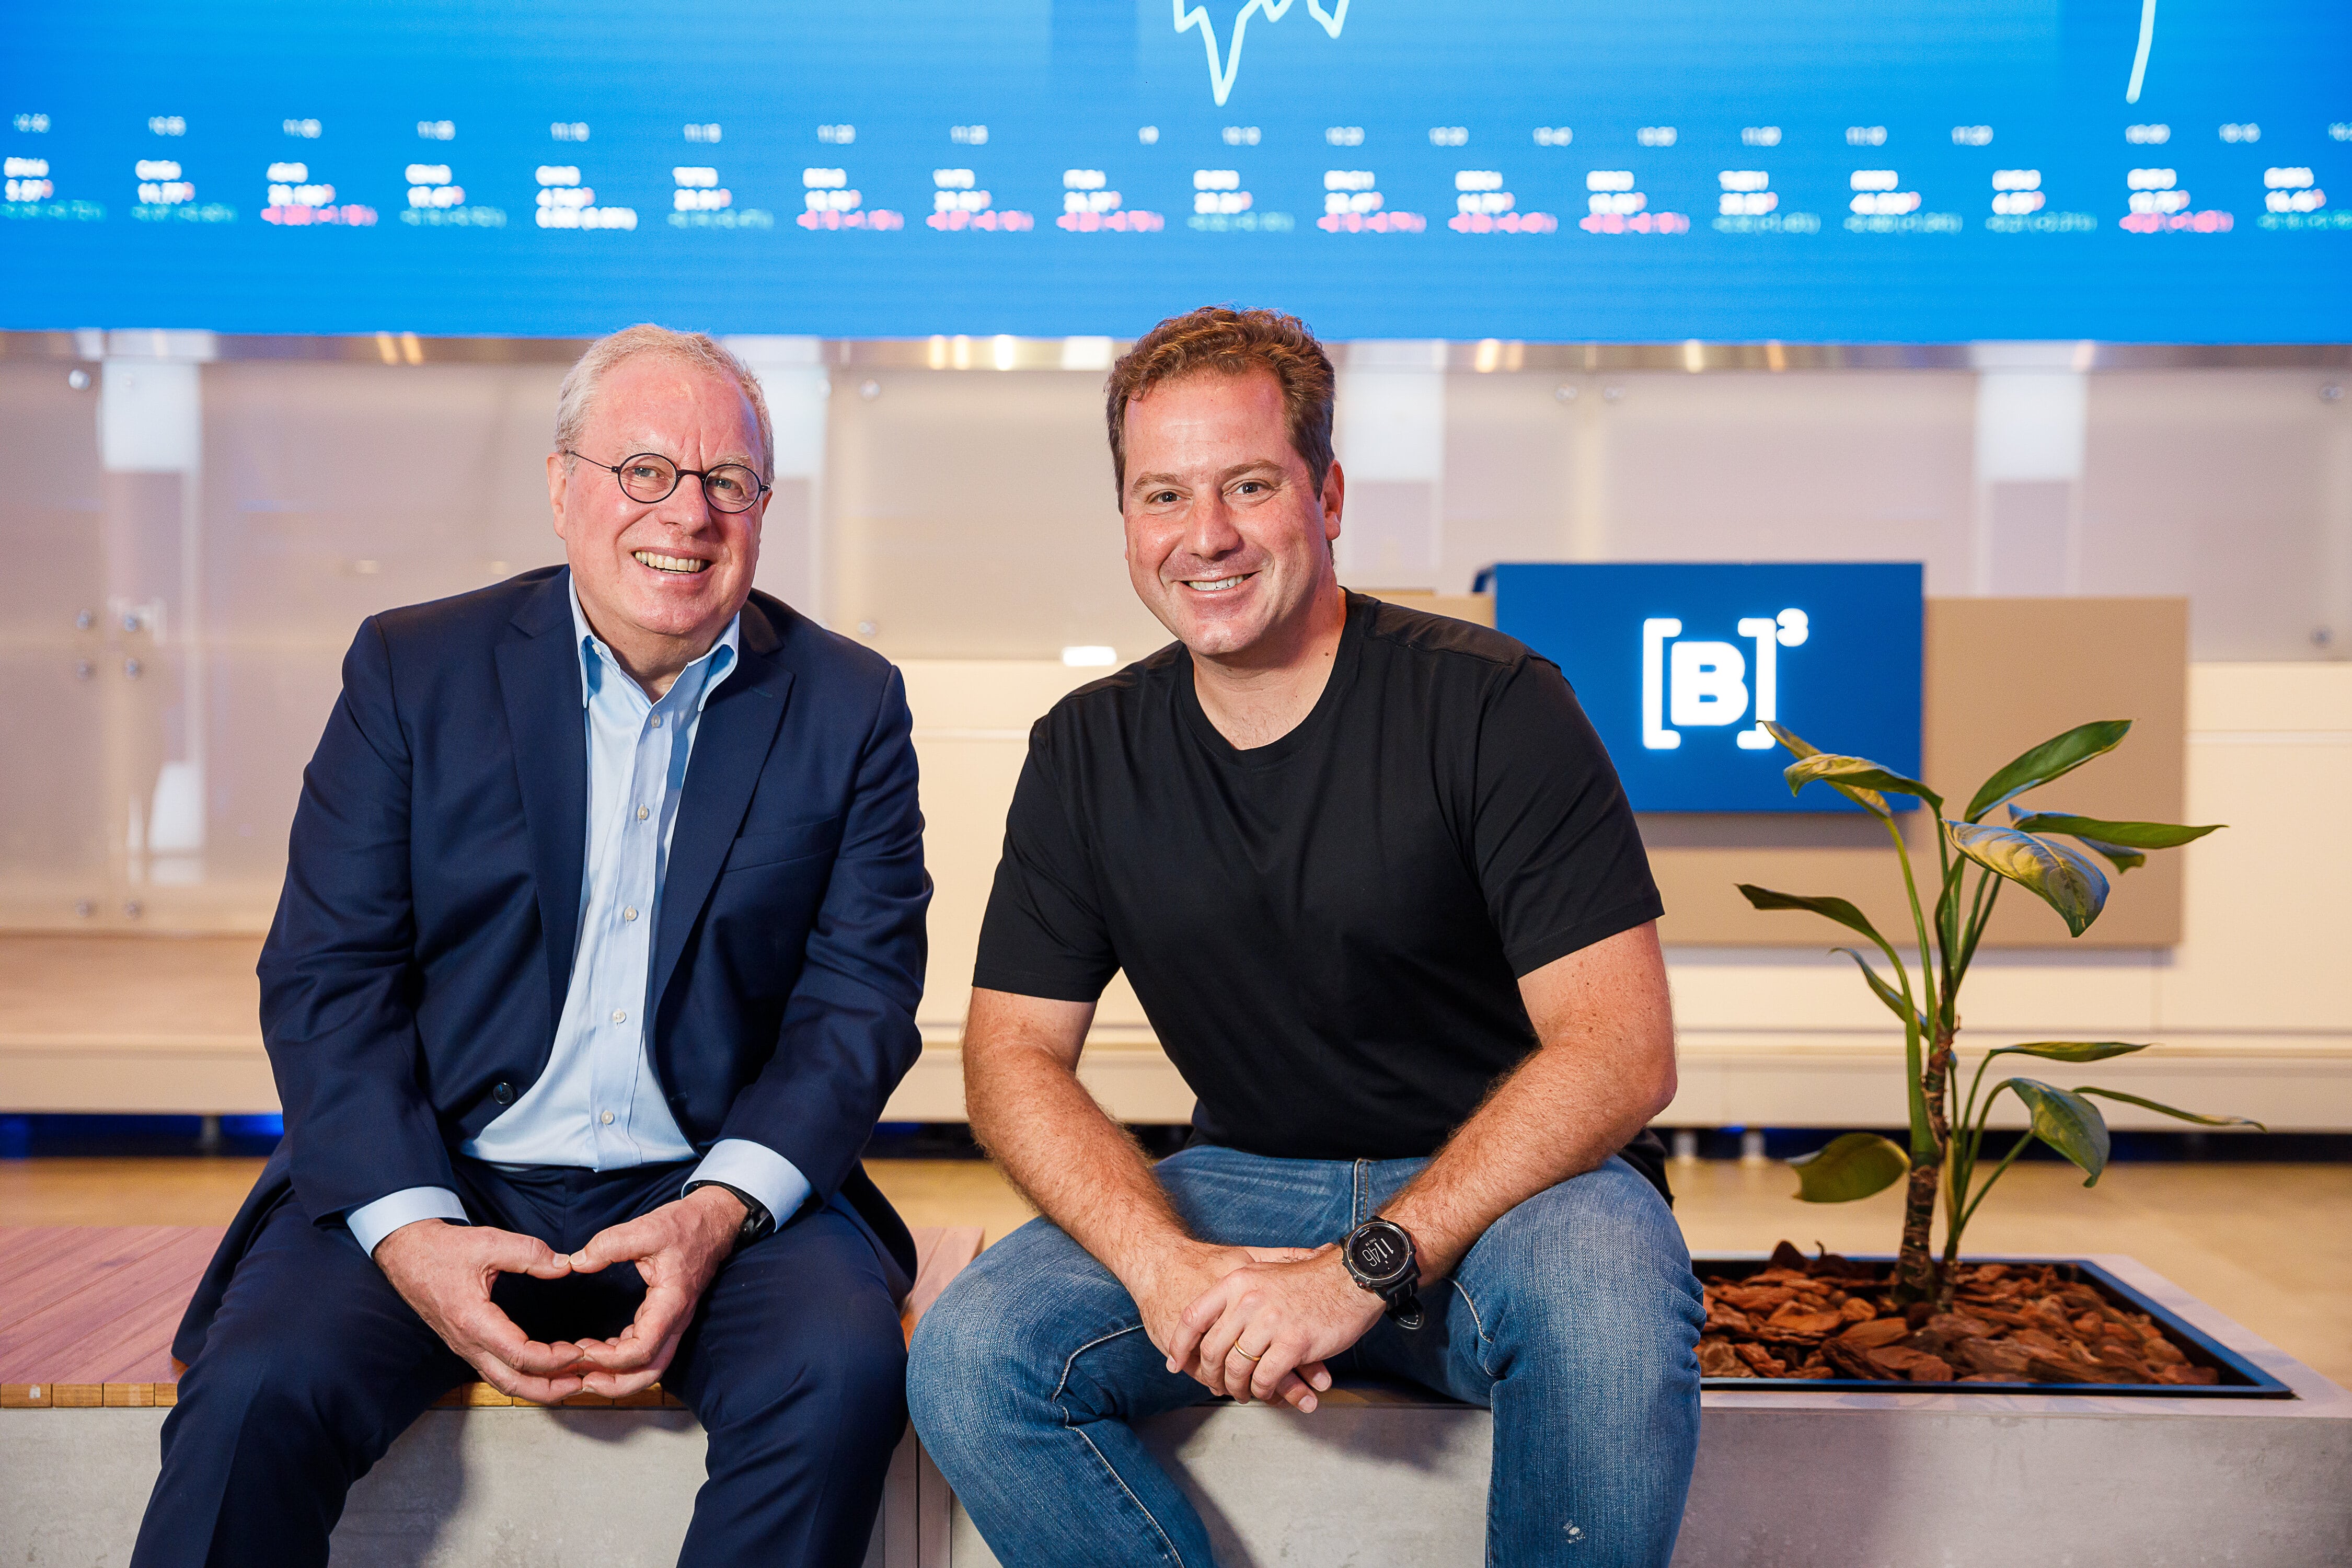 Fundo de investimentos da B3 aposta R$ 30 milhões em startup sueca - InfoMoney